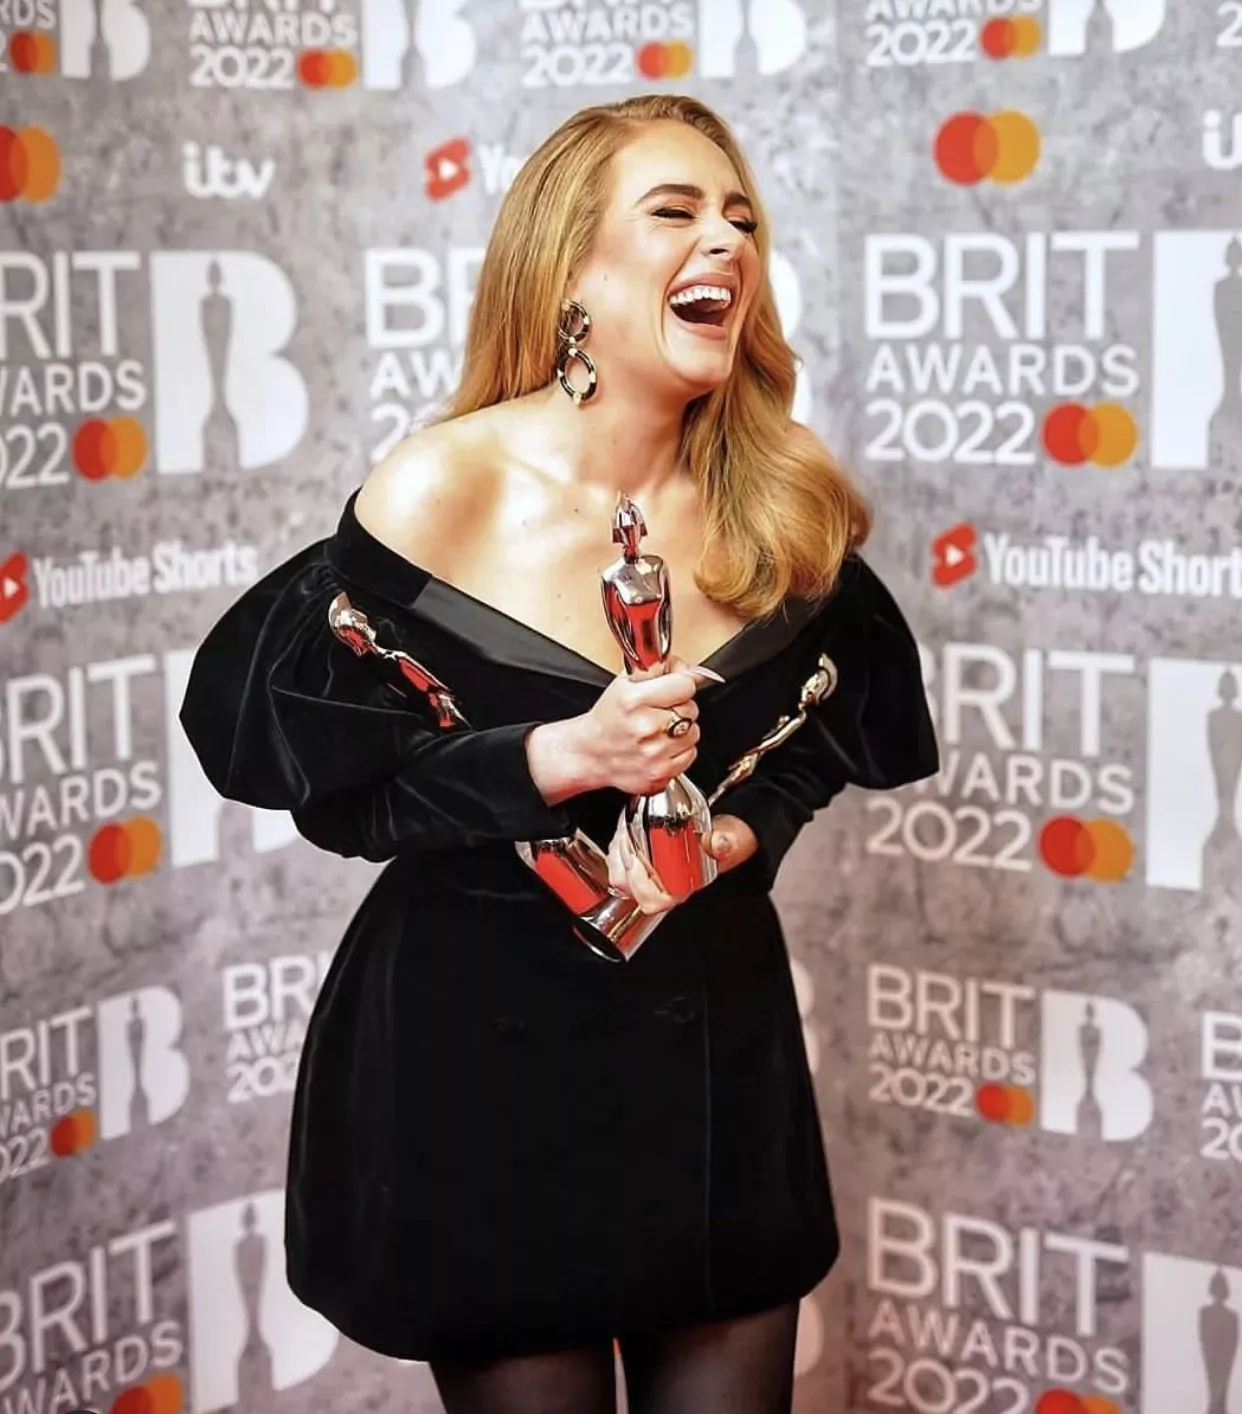 أديل تطل بلوك مُبهر في حفل Brit Awards في لندن وتفوز بـ3 جوائز موسيقية كبرى!